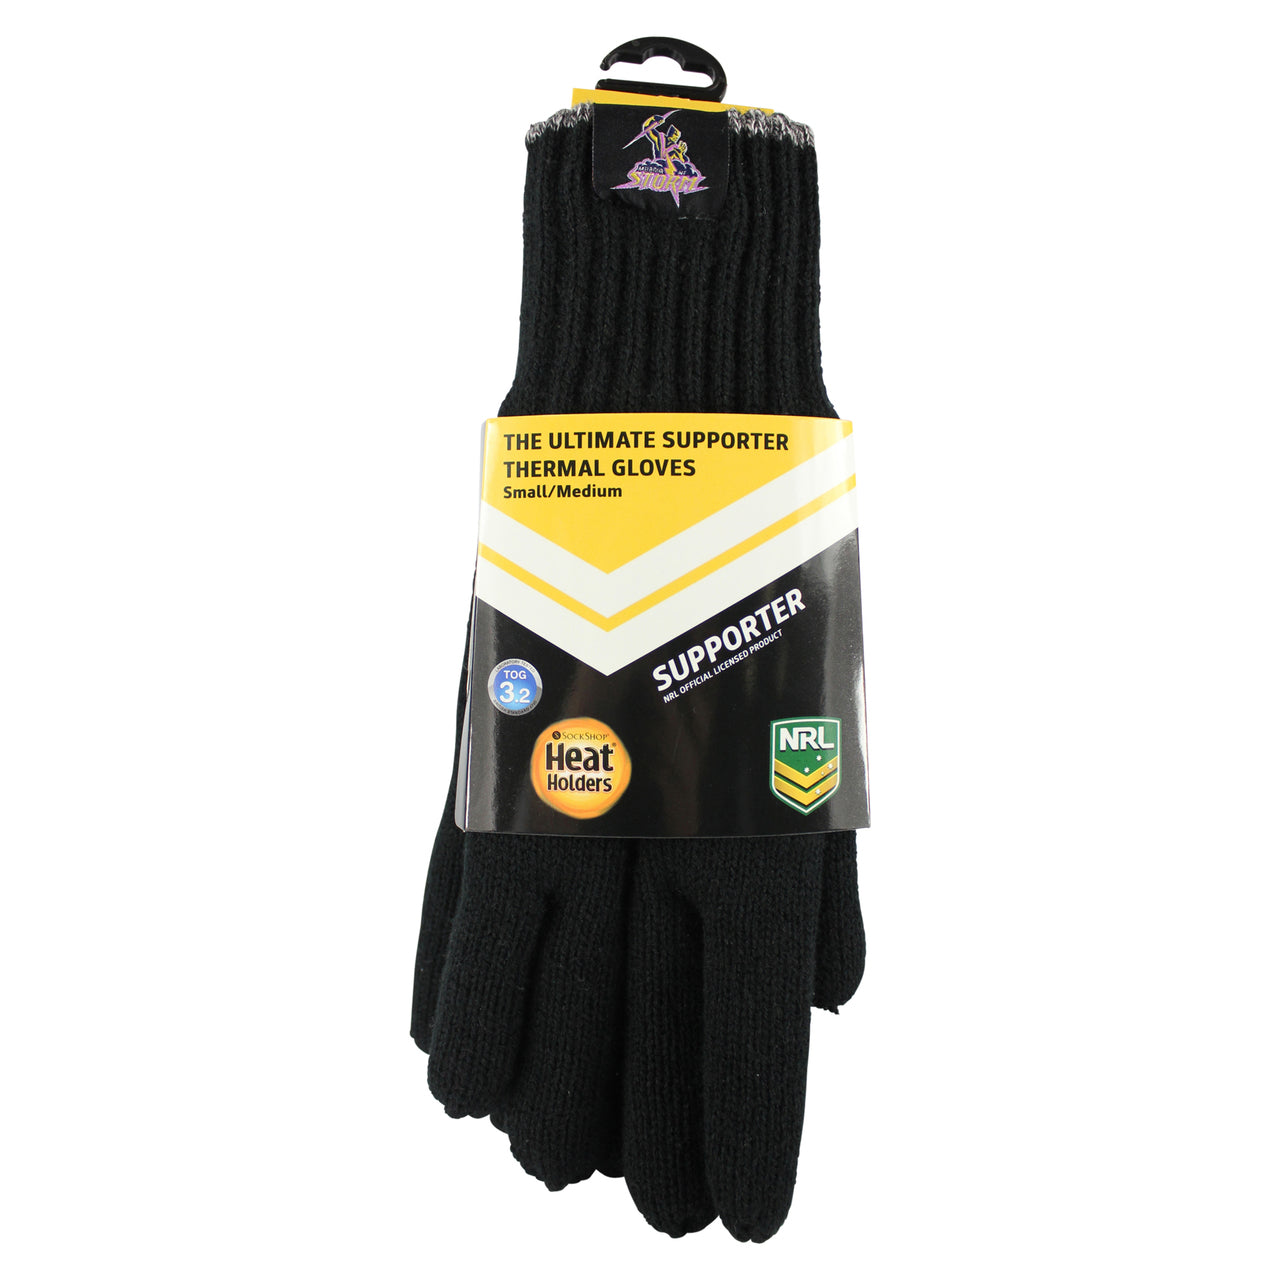 NRL Heat Holders Thermal Gloves Melbourne Storm